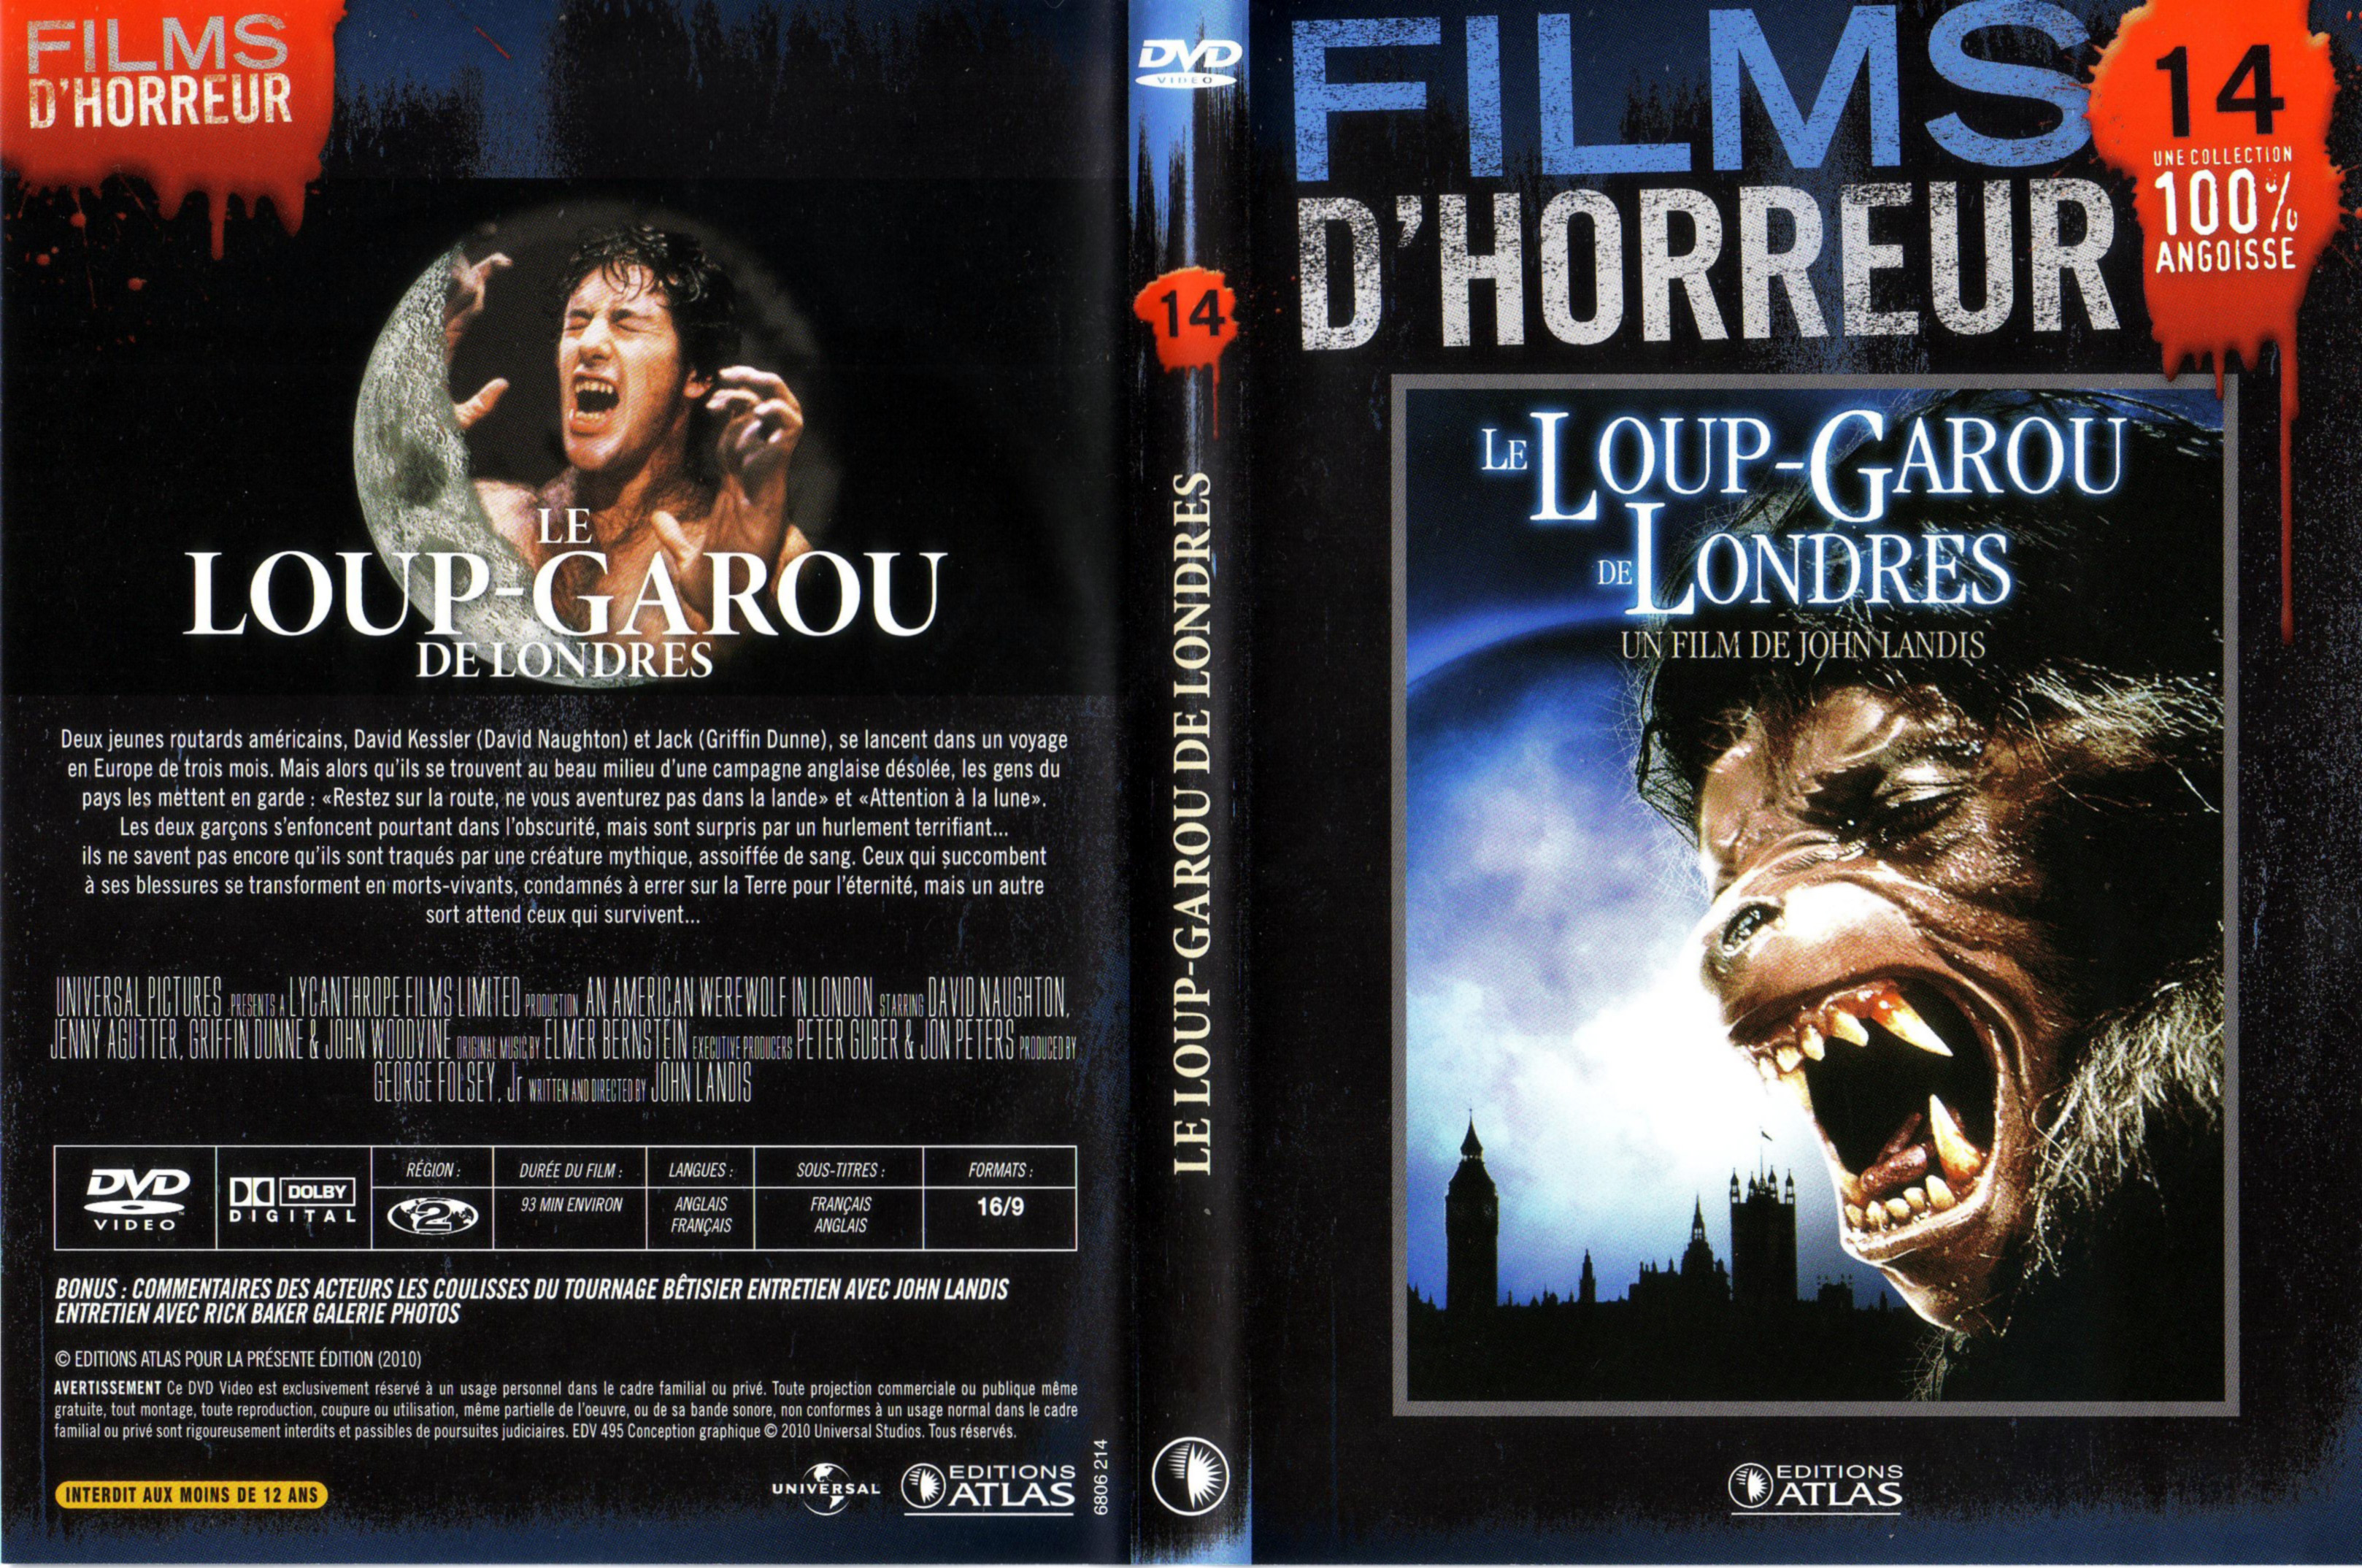 Jaquette DVD Le loup garou de Londres v2